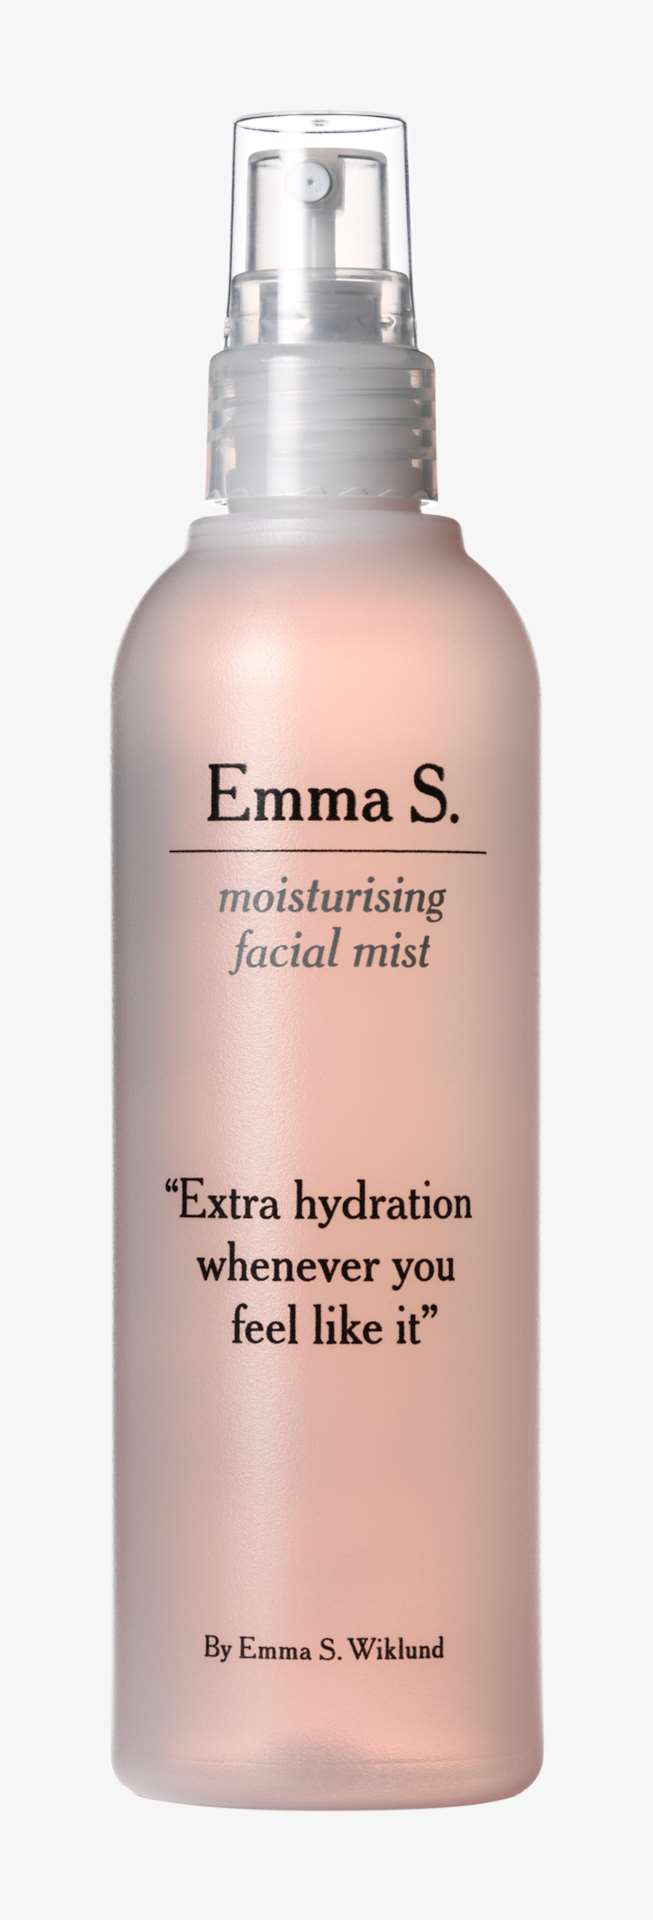 Emma S. Moisturising Facial Mist